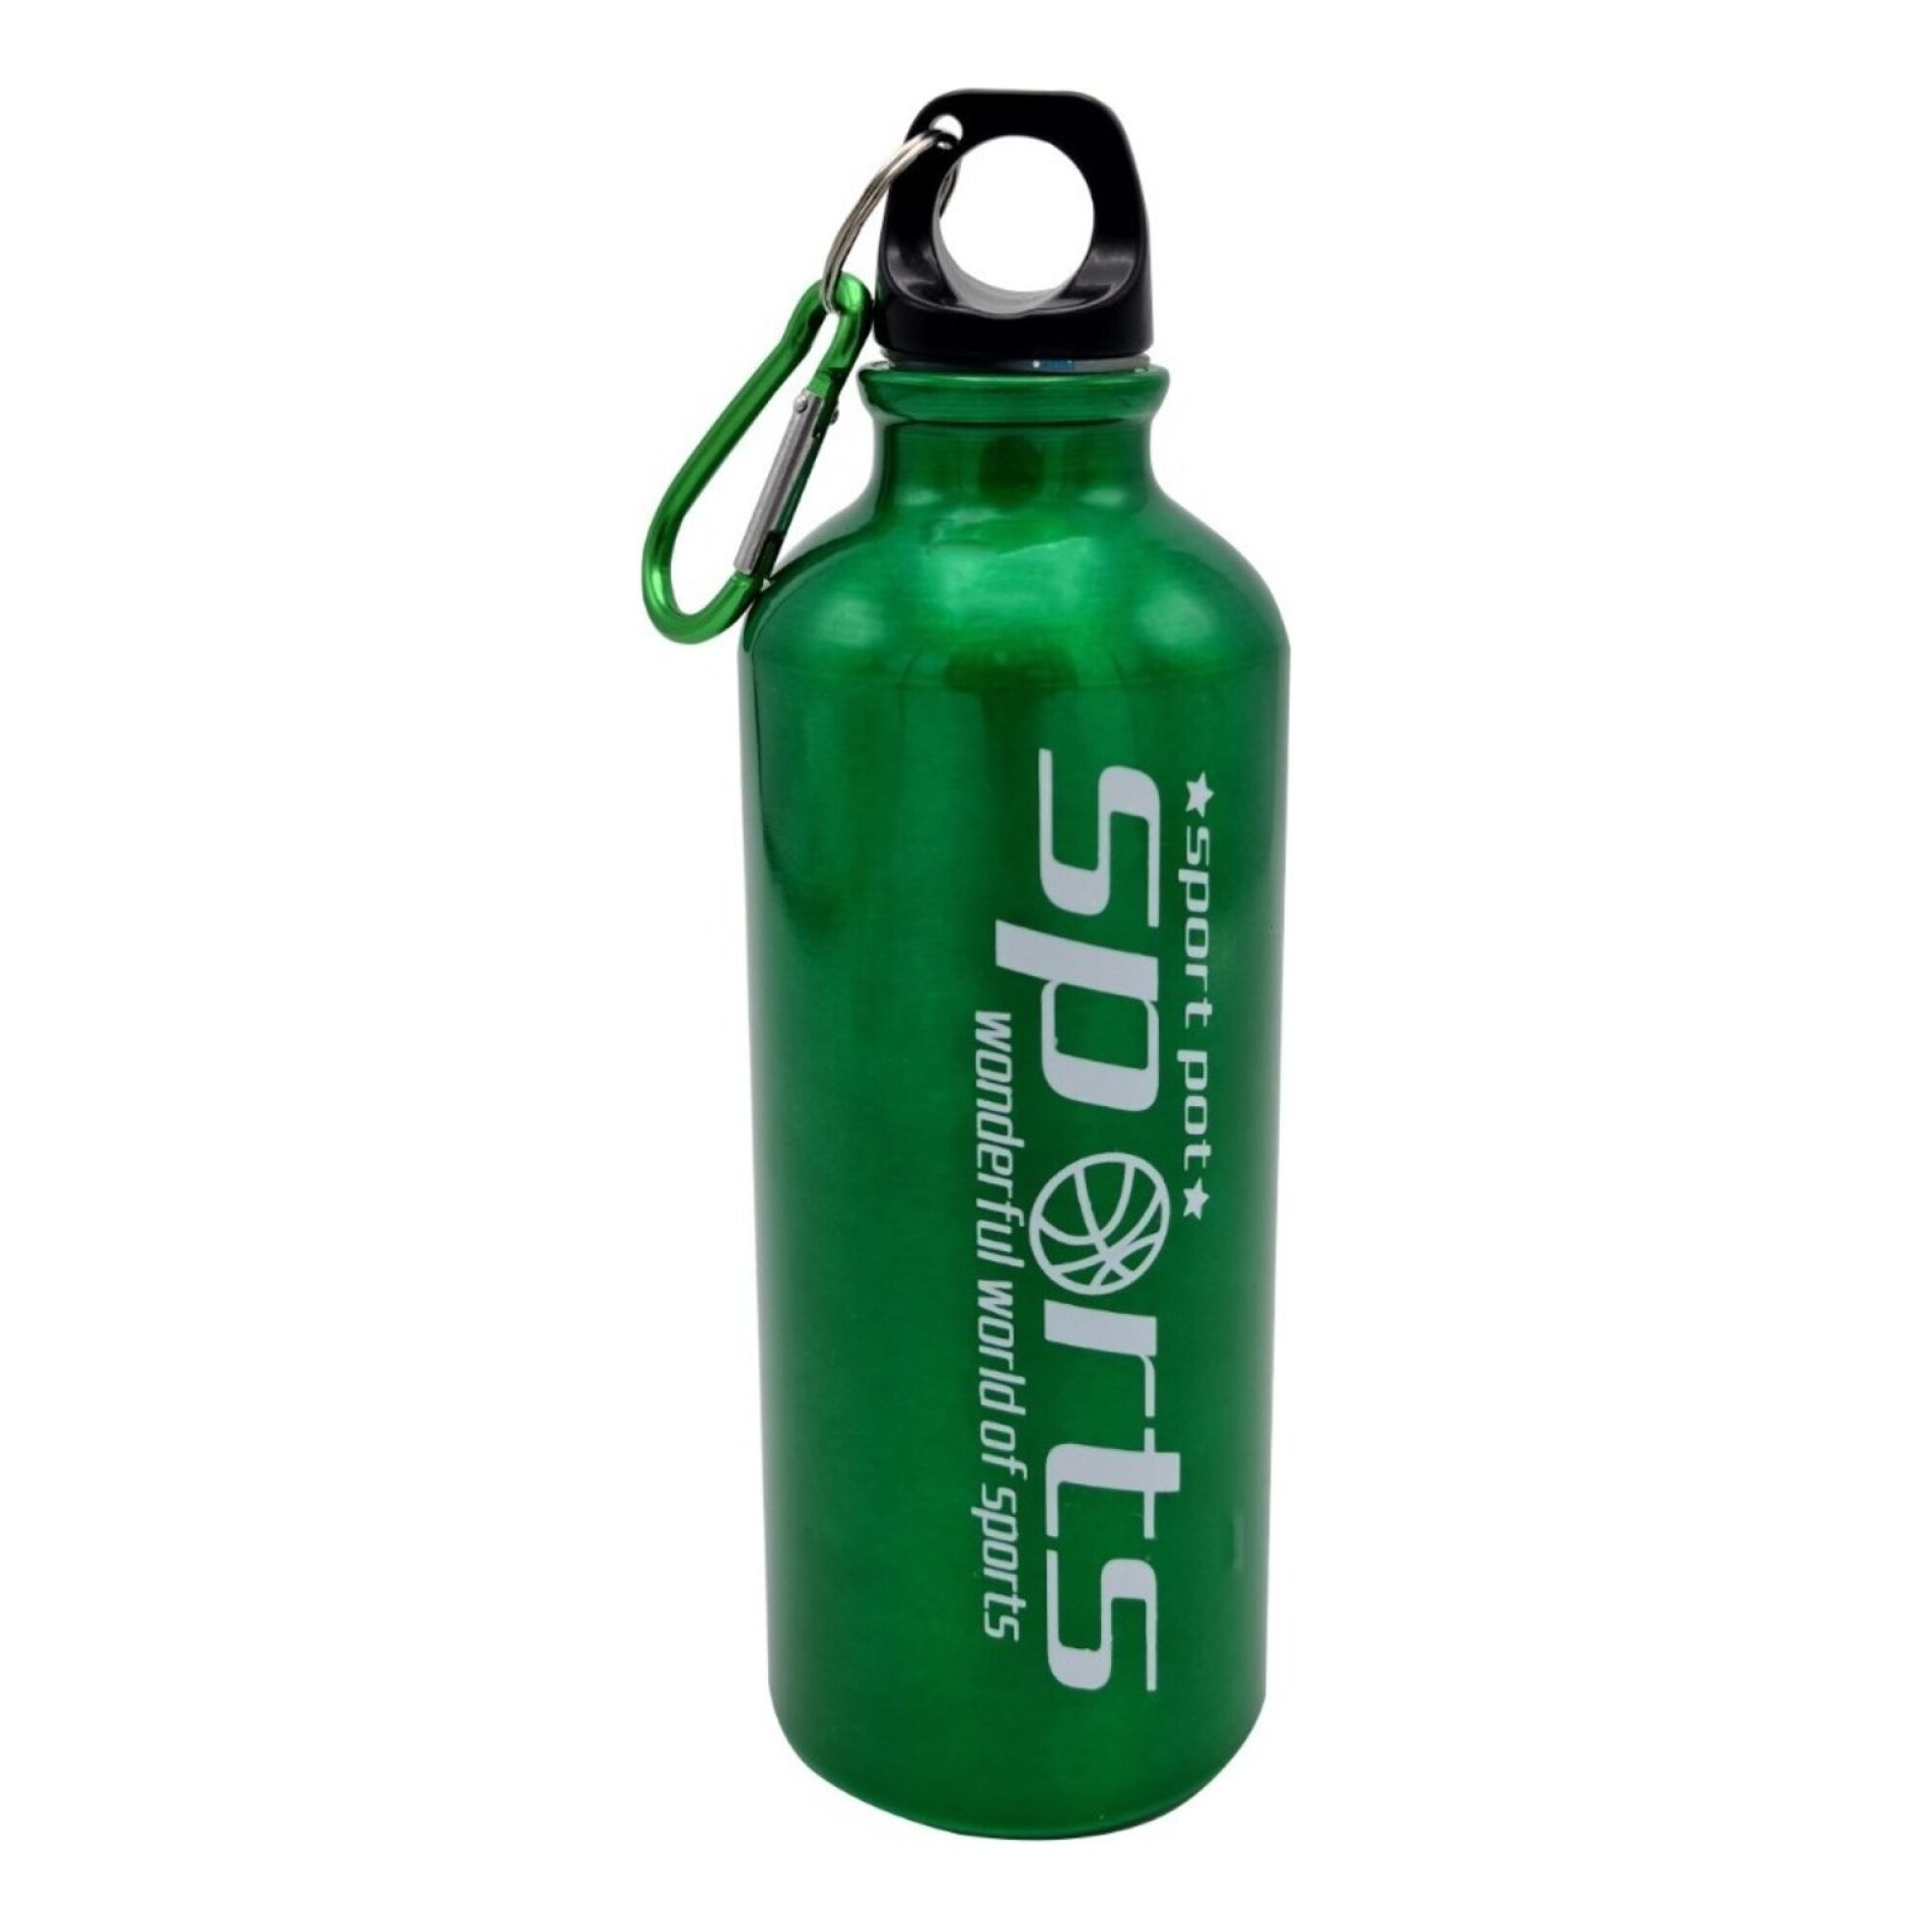 https://f.fcdn.app/imgs/1d15a1/www.atrixuy.com/atriuy/63e8/original/catalogo/TBFIT45_VERDE_1/2000-2000/botella-agua-deportiva-500-ml-hidratacion-fitness-caramanola-color-variante-verde.jpg